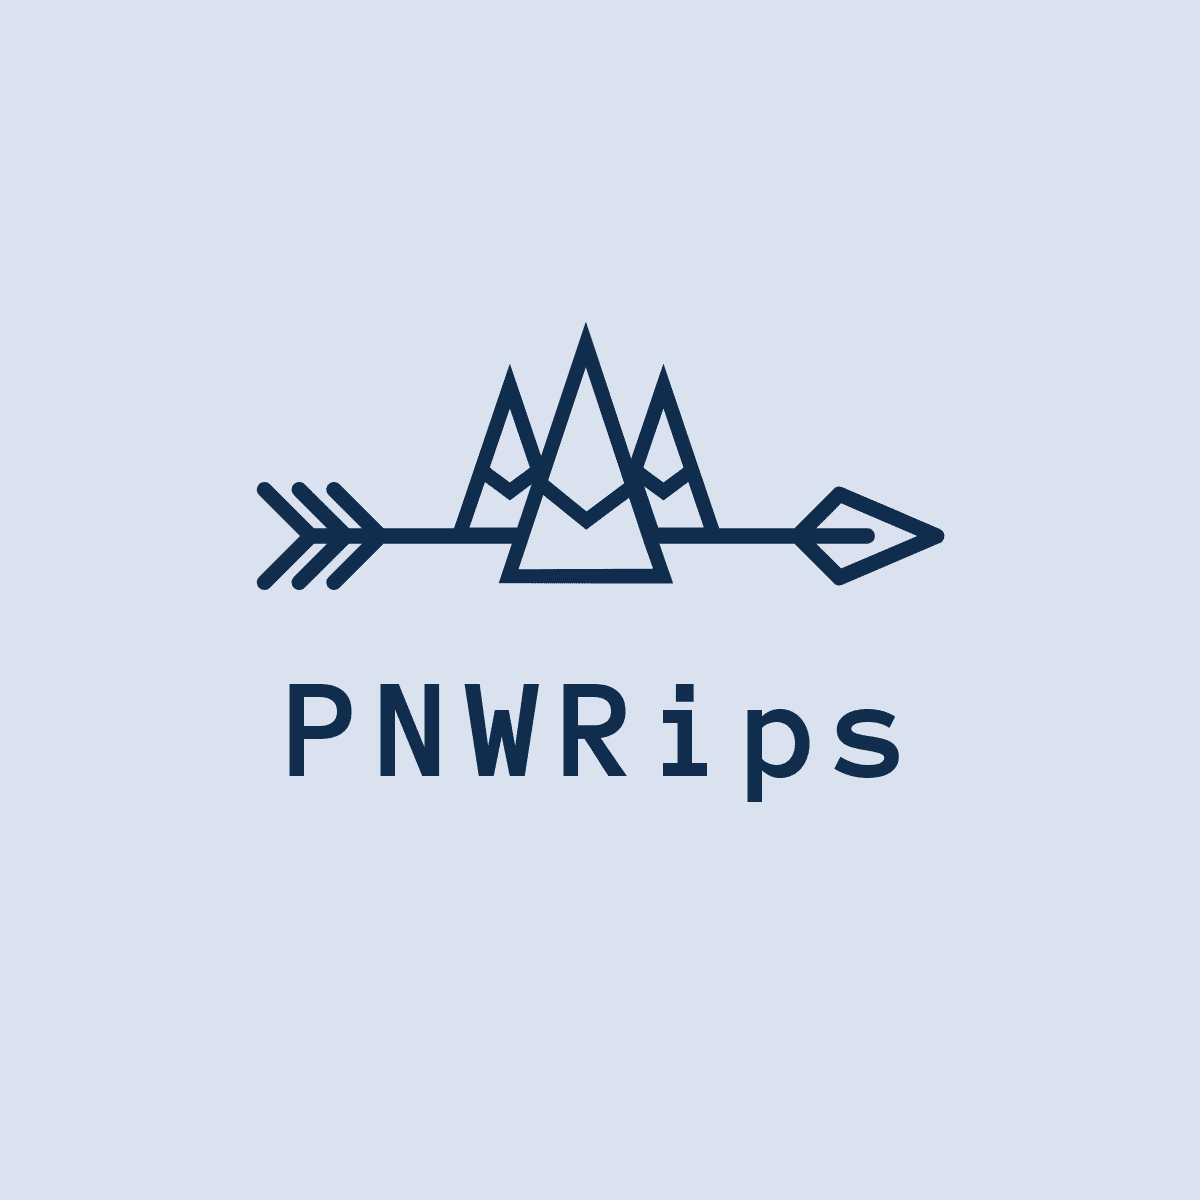 PNWRips